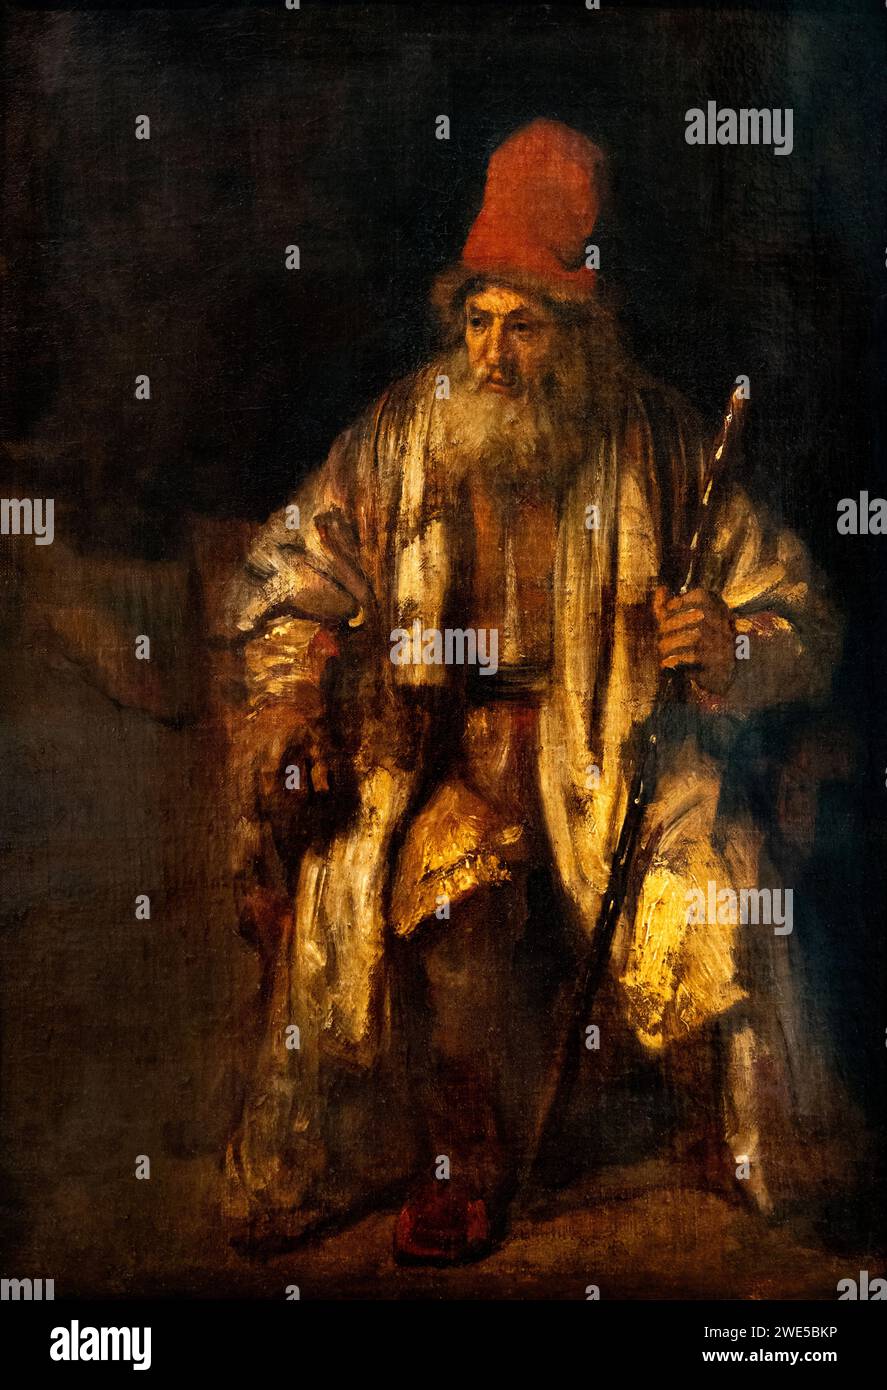 Rembrandt van Rijn, ou peinture de Rembrandt ; « le vieil homme au chapeau ou au chapeau rouge » peinture néerlandaise de l'âge d'or du XVIIe siècle. Banque D'Images